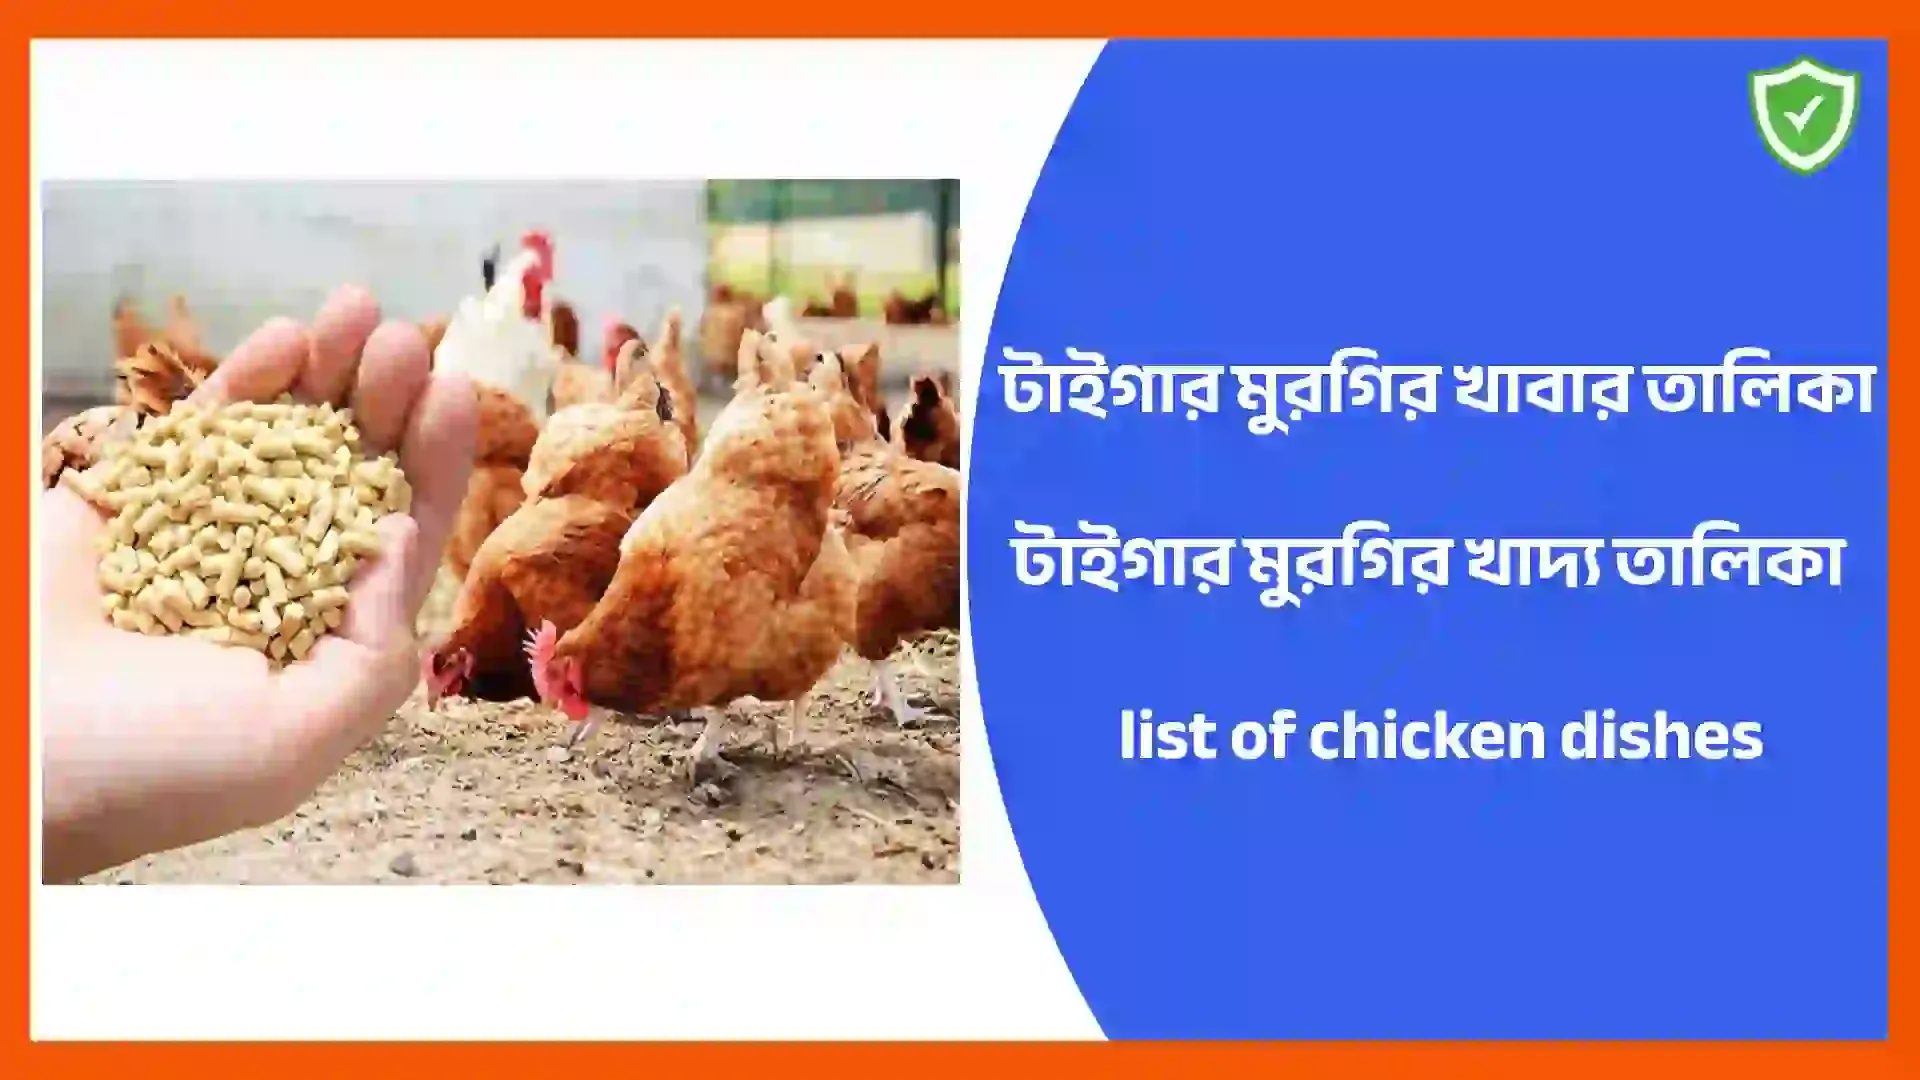 টাইগার মুরগির খাবার তালিকা | টাইগার মুরগির খাদ্য তালিকা | list of chicken dishes